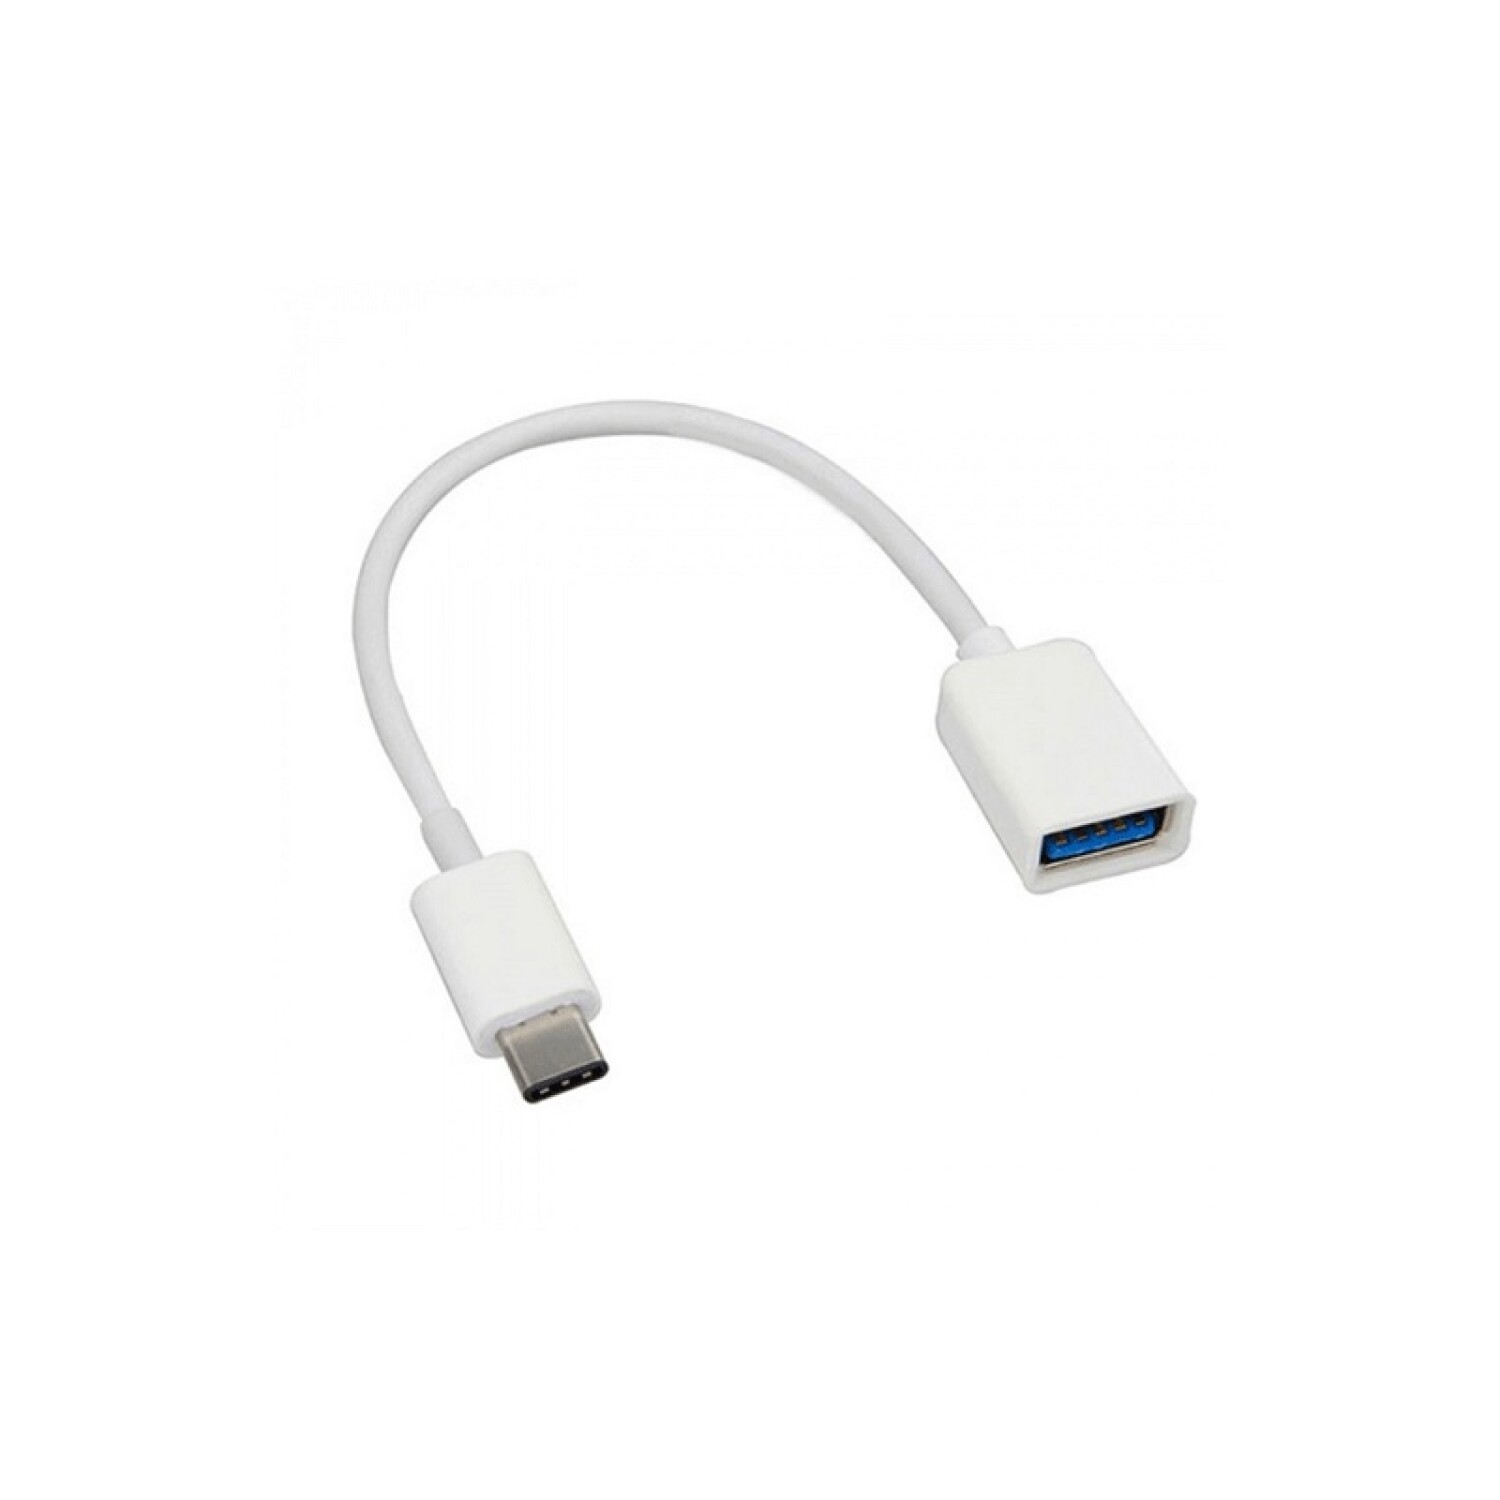 Tipo-C a USB3.0 Cable adaptador Cable OTG Tipo-C Macho a